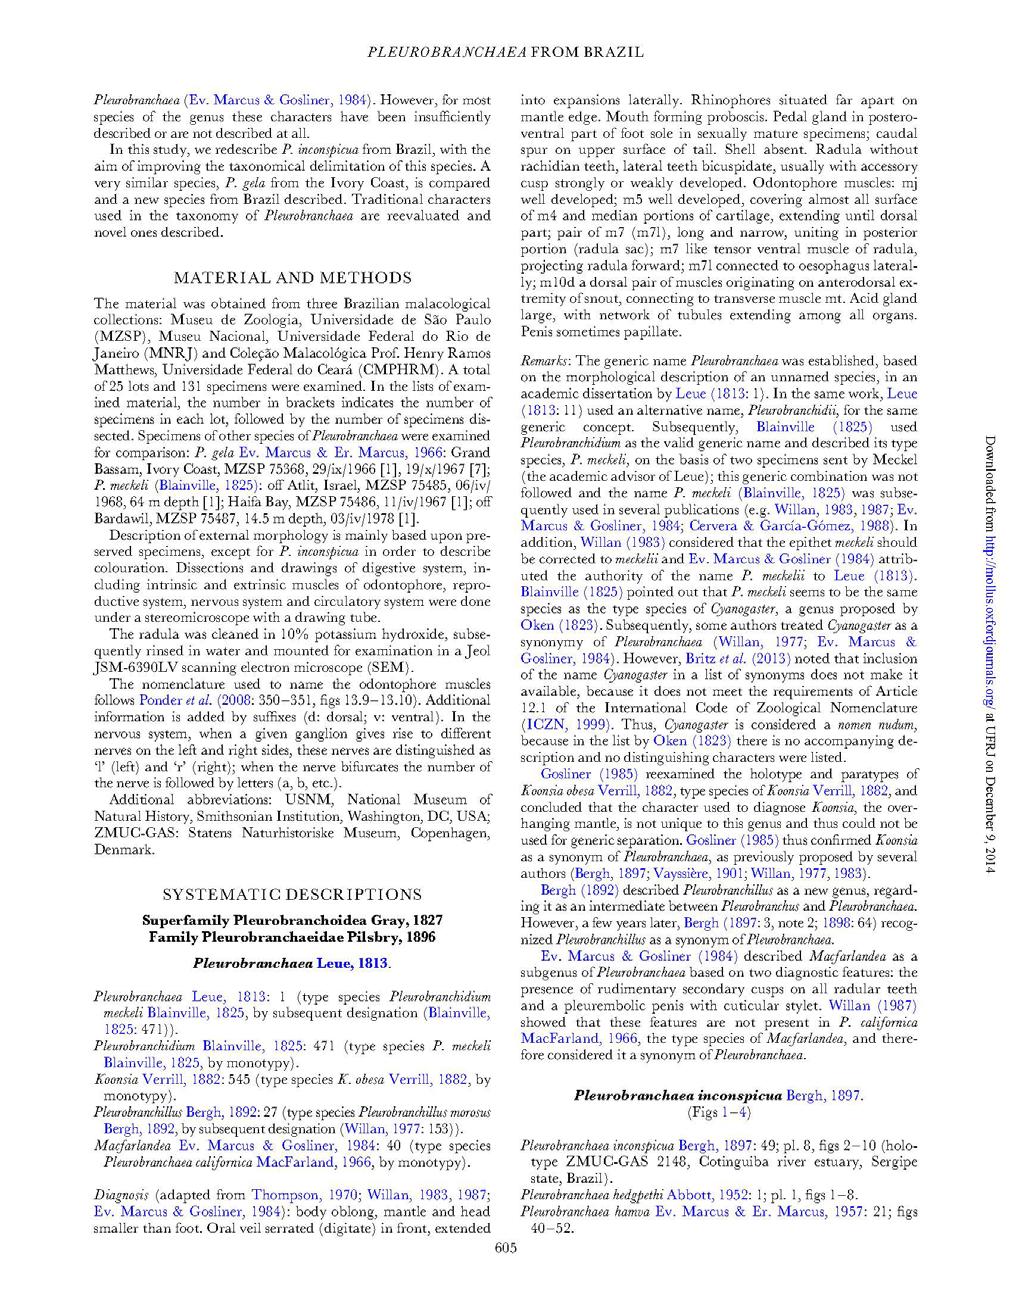 ANEXO 4. Exemplo de Apêndice na parte Pós-textual contendo reprodução de separata em pdf de artigo publicado.